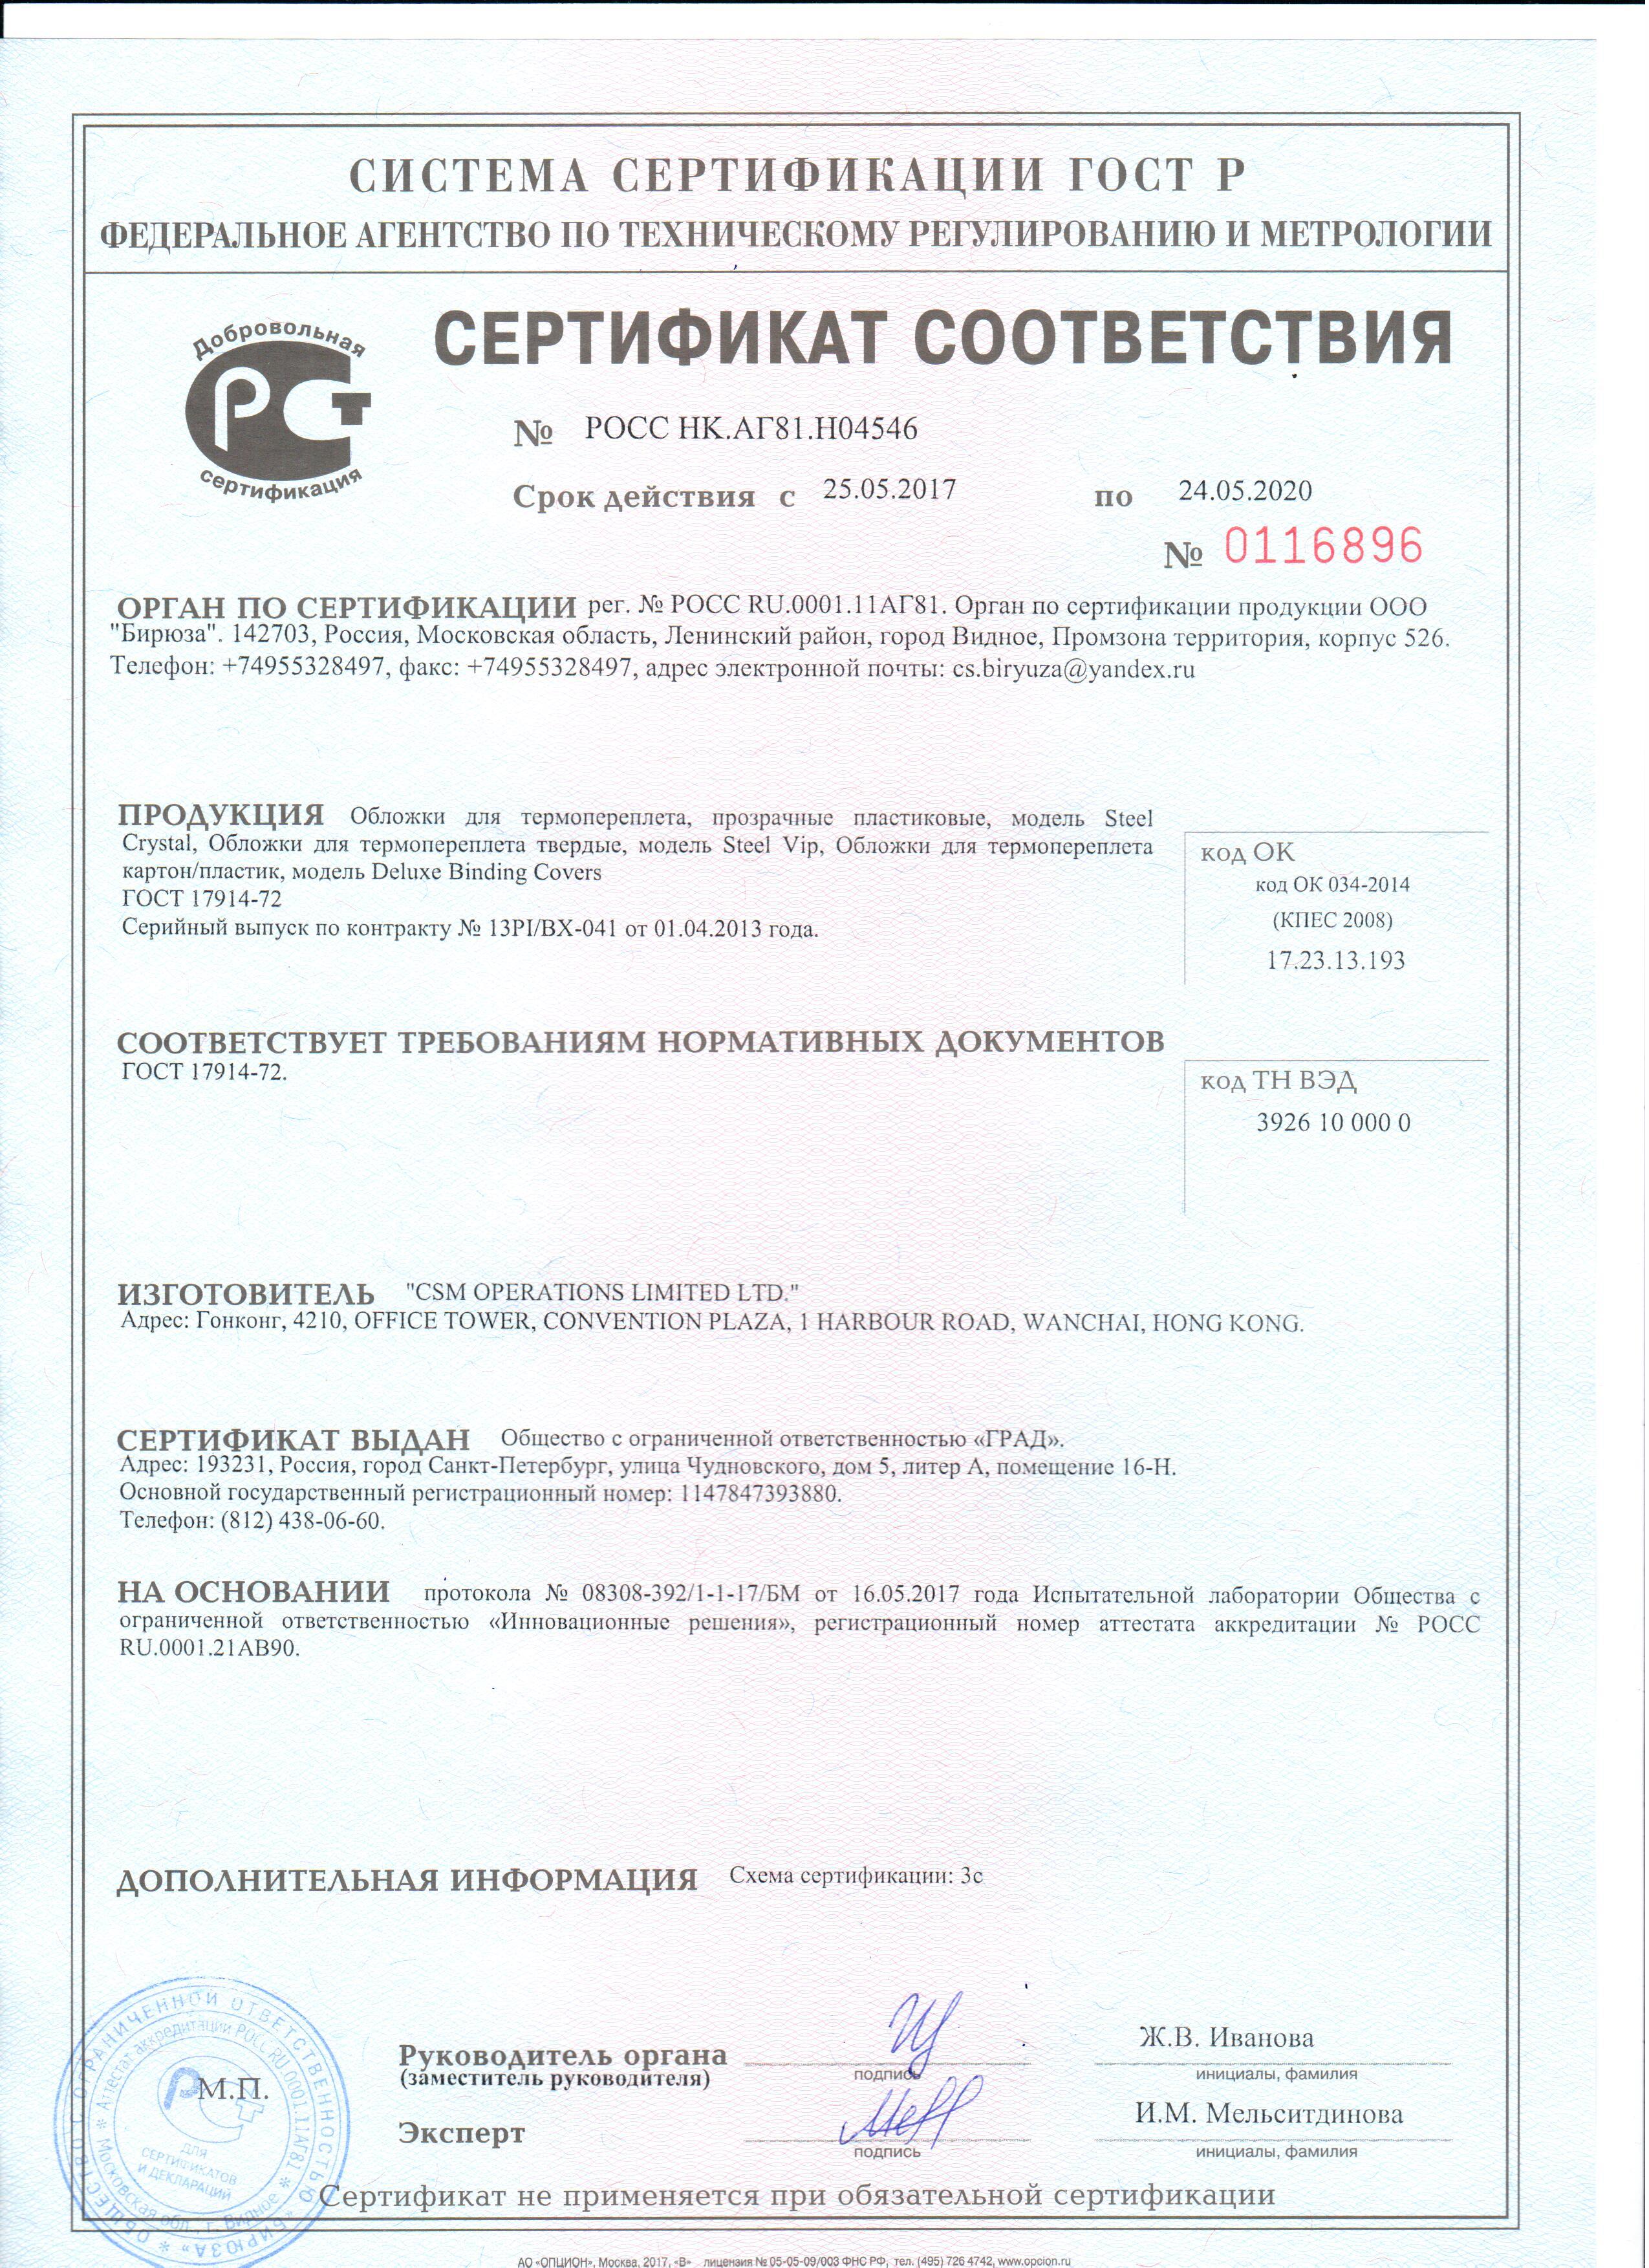 сертификат соответствия обложек для термопереплета